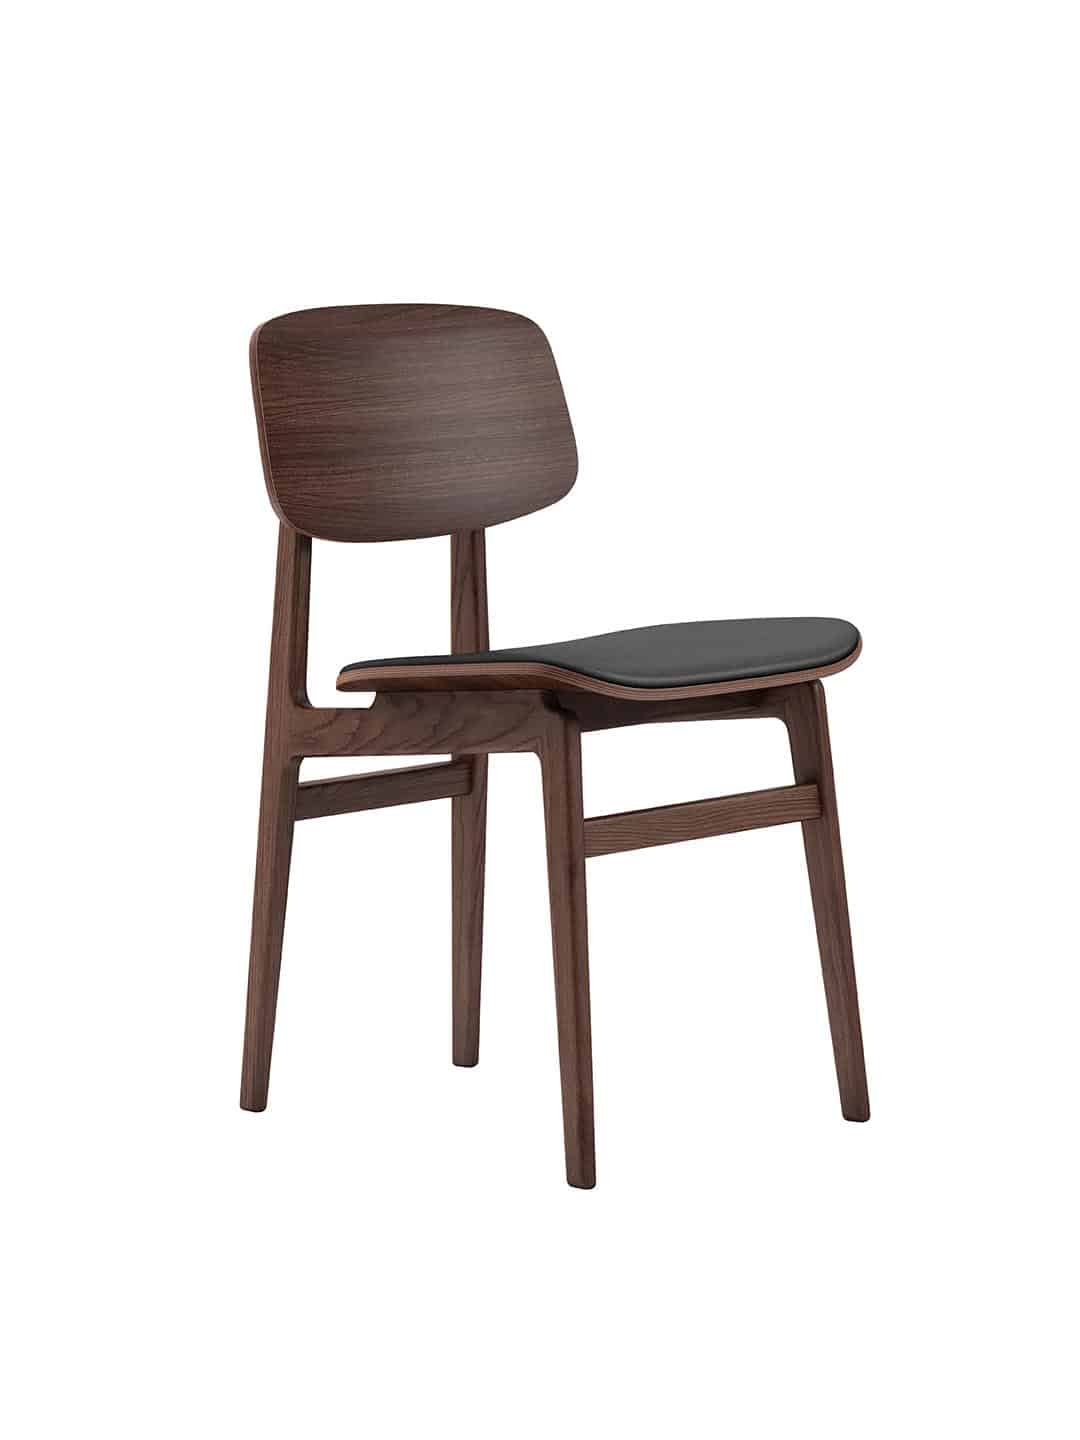 Элитный обеденный стул NORR11 NY11 из темного дуба с кожаным сиденьем